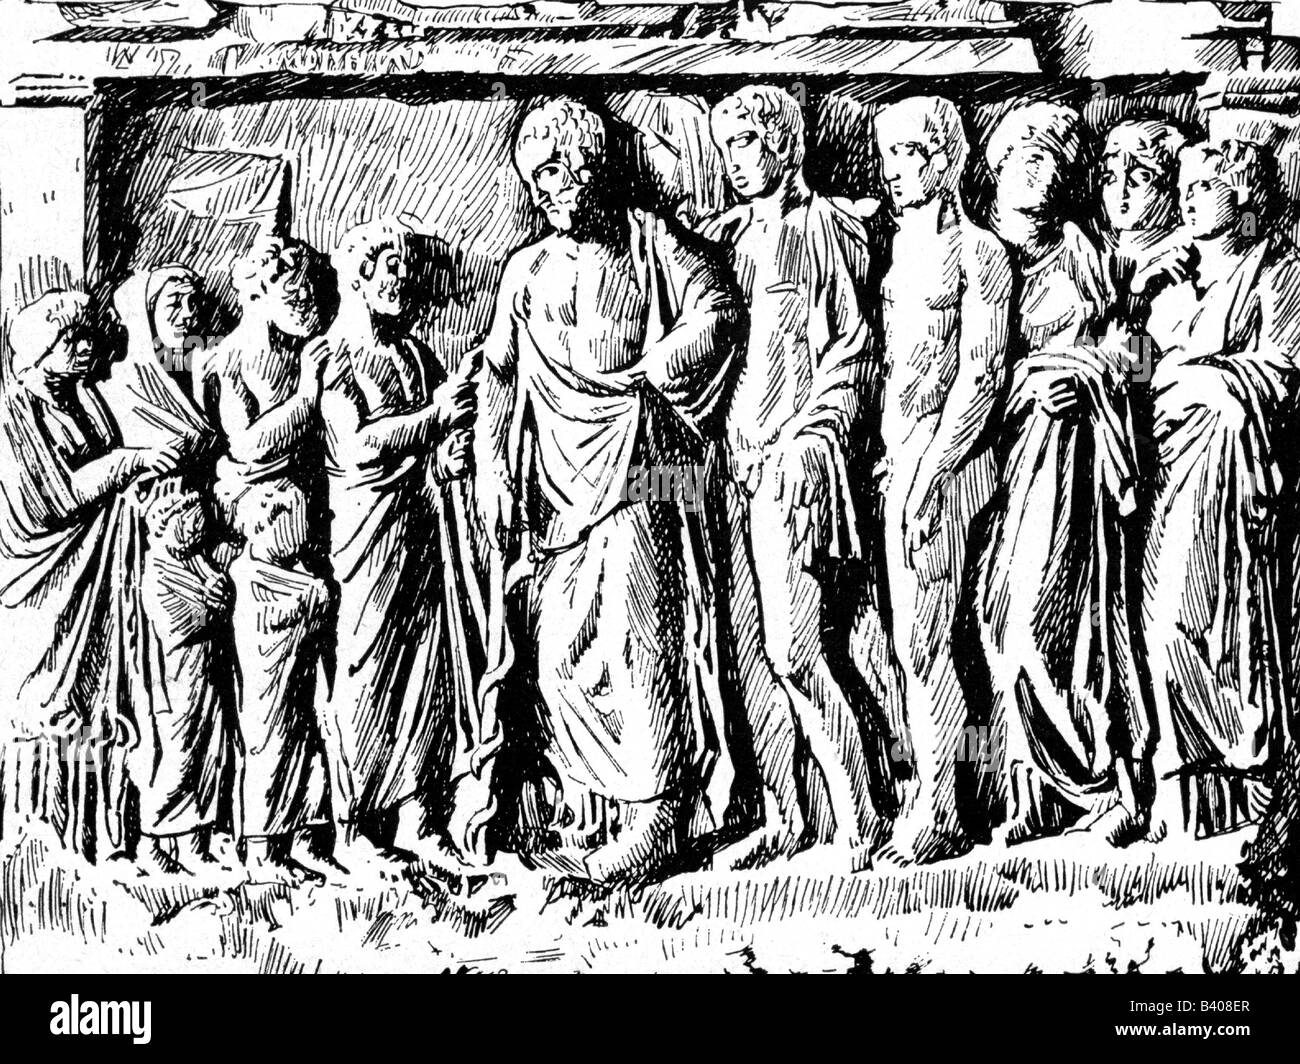 Asclepius, der griechische gott der Medizin, in voller Länge, mit seiner Tochter Hygieia, Machaon, Podaleirios, Akeso, Jaso, Panakeia, Stockfoto